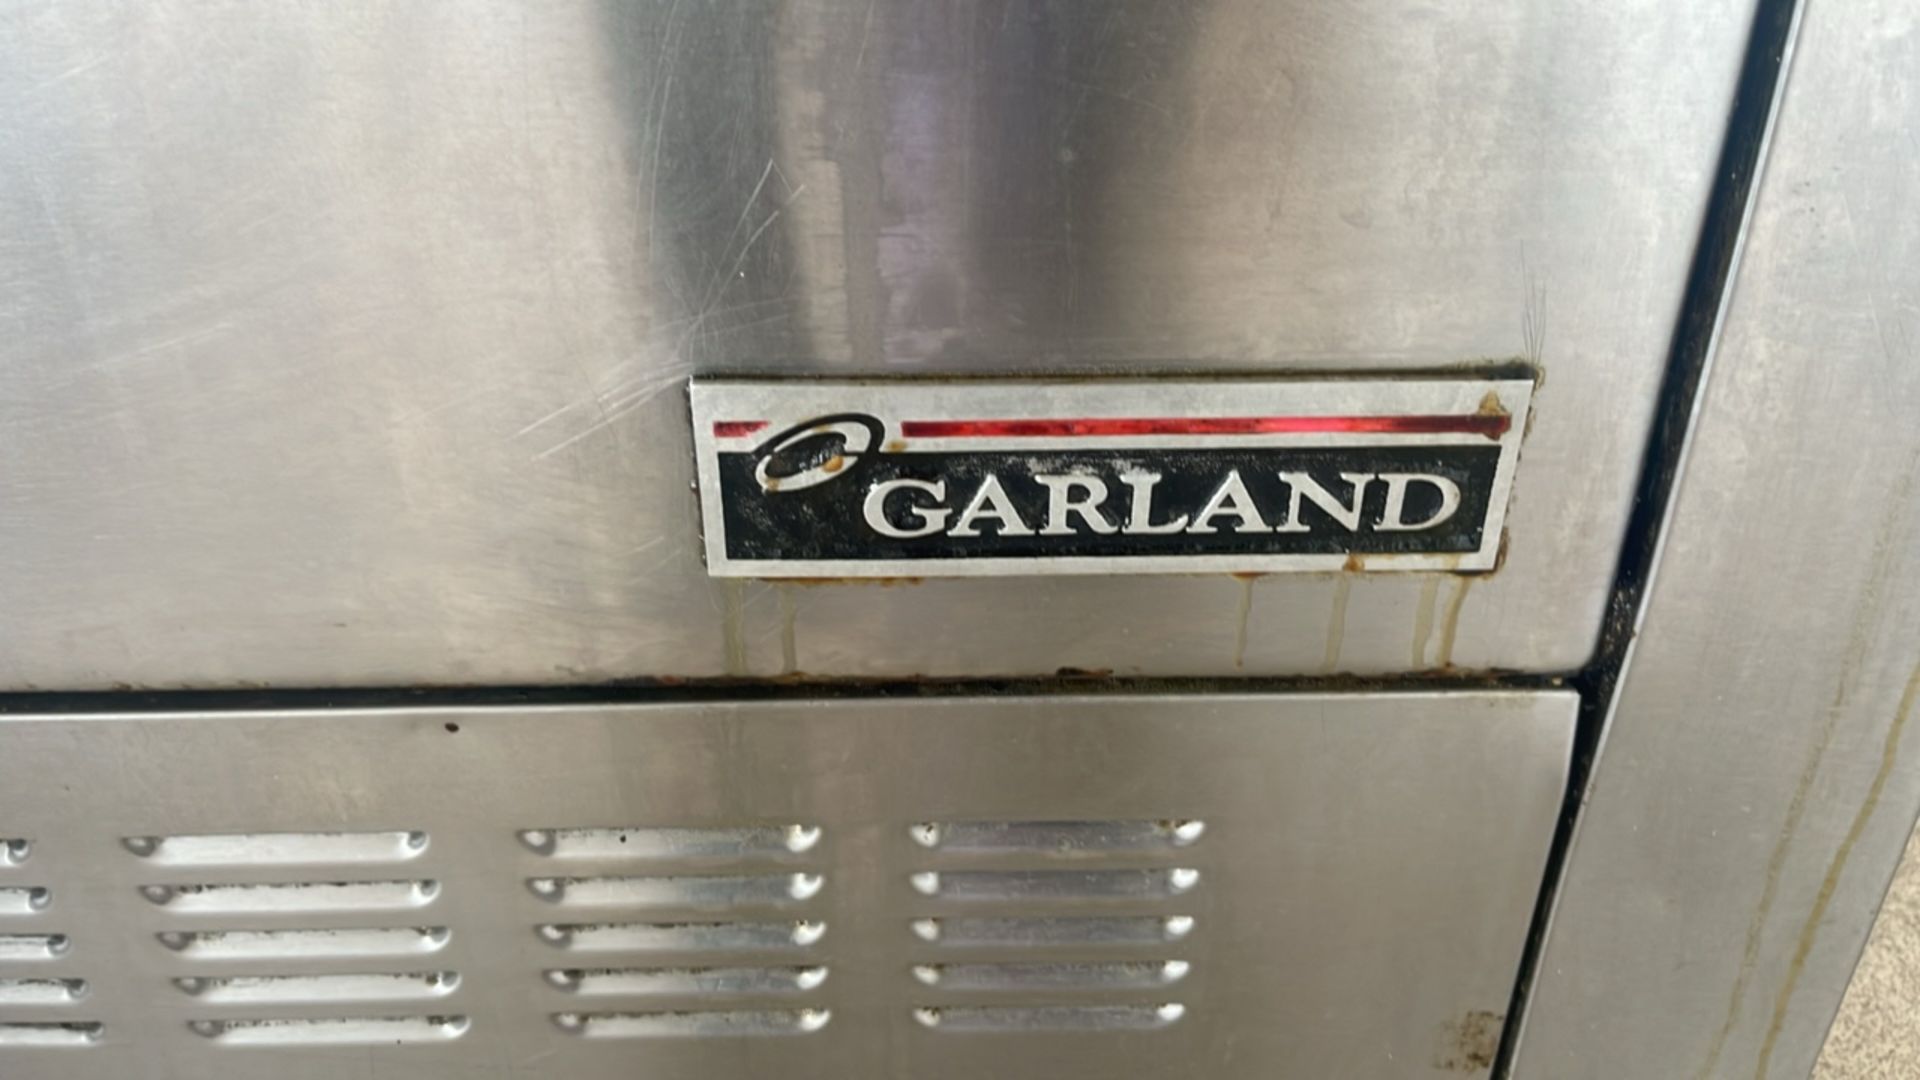 Garland 6 Ring Burner/Oven - Image 2 of 7